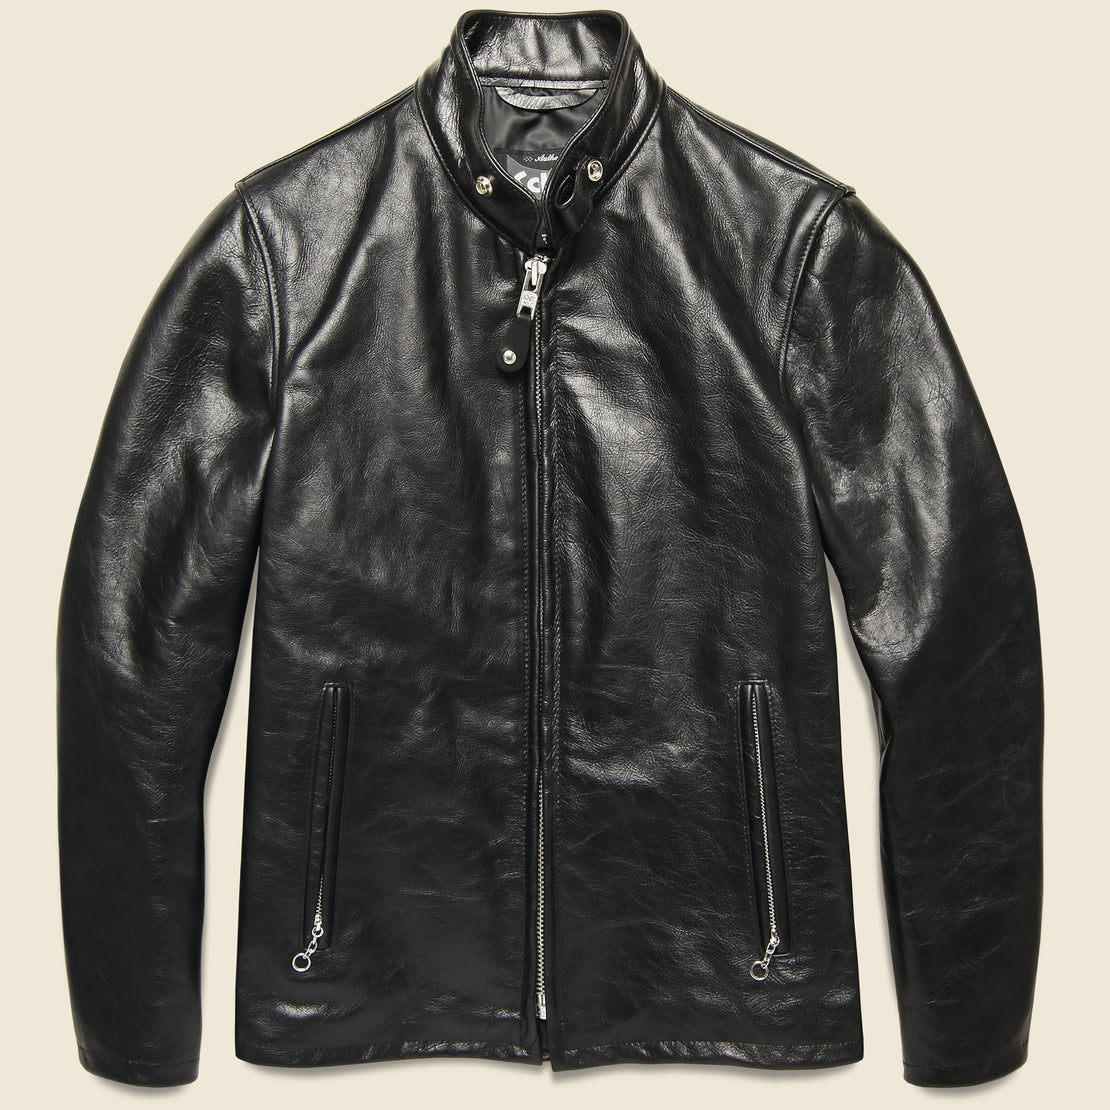 Schott Cafe Racer Jacket - Black Leather